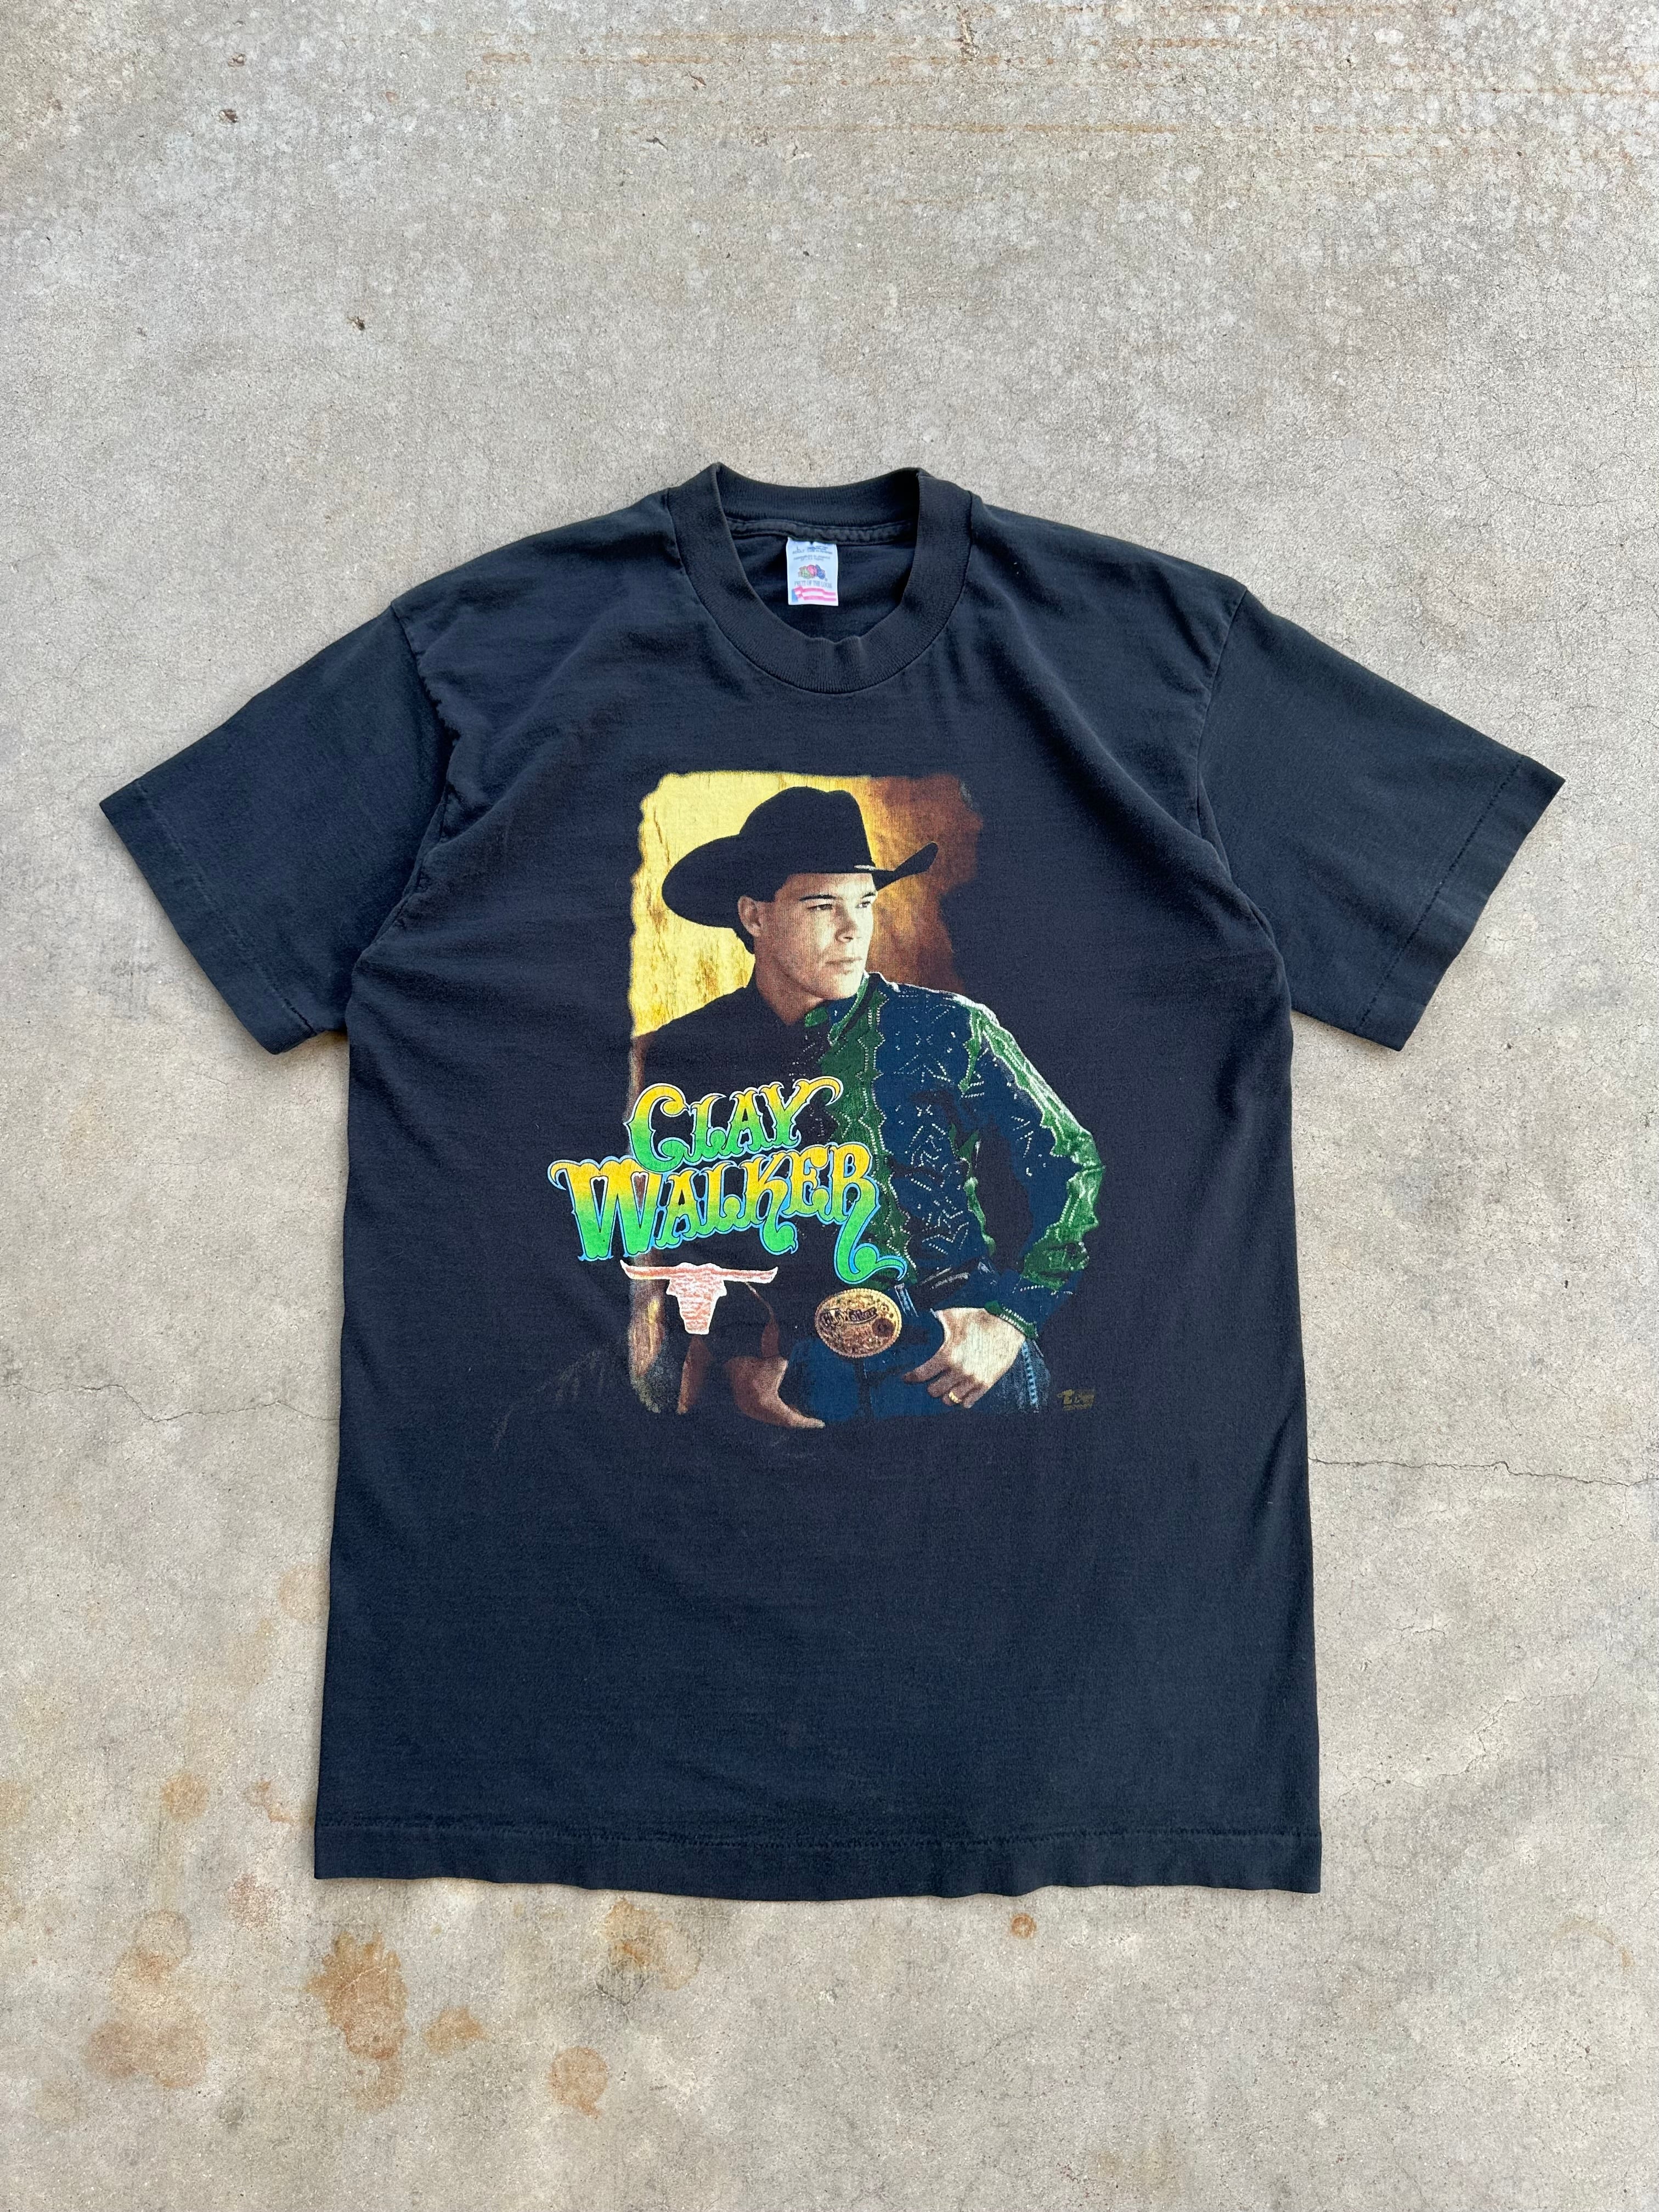 Vintage 1990’s Clay Walker Tour T-Shirt (M/L)